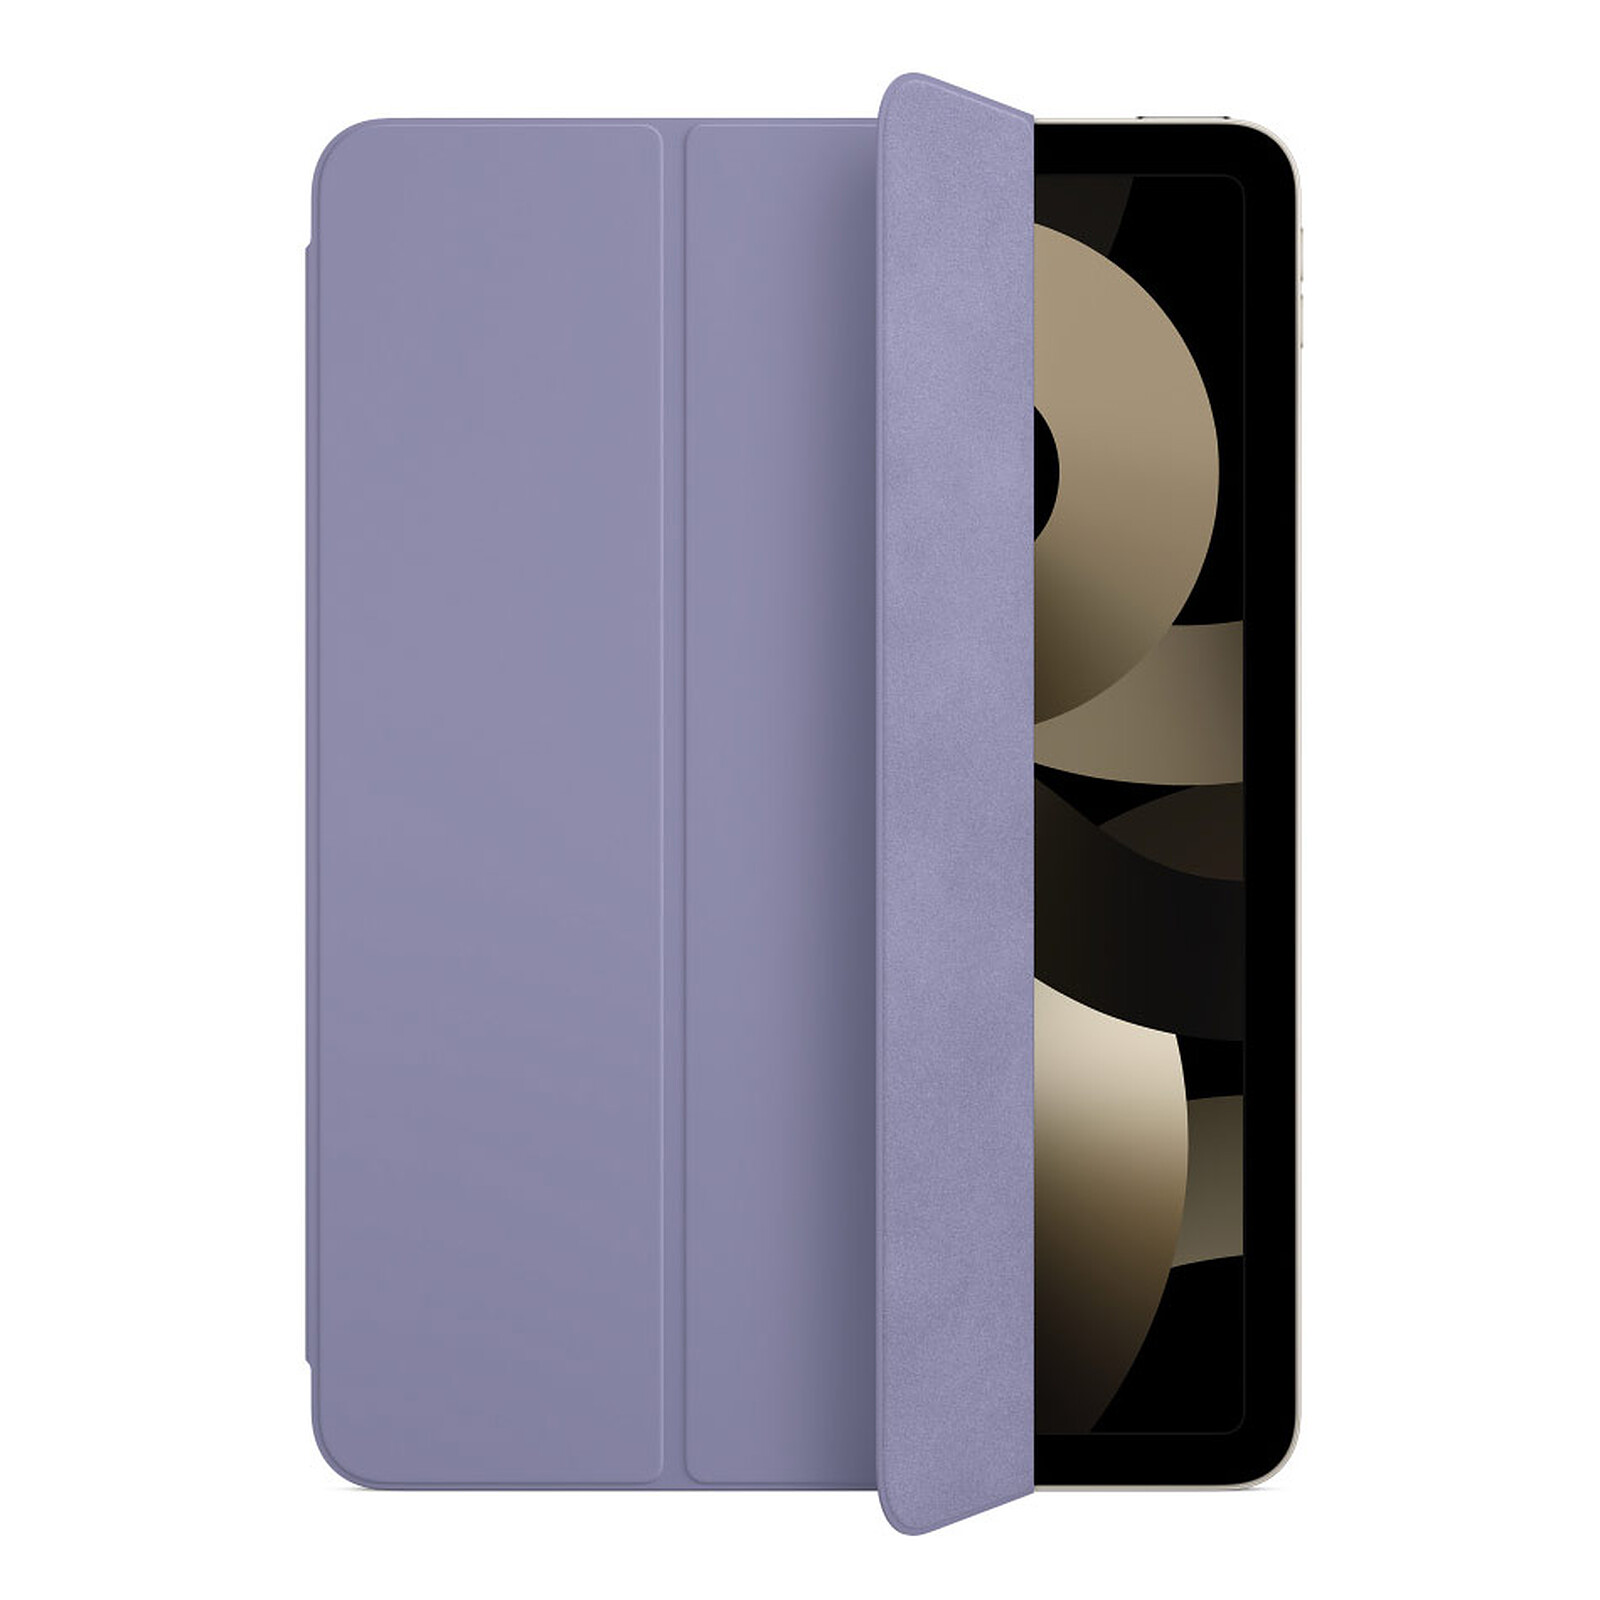 Funda Cover Smart Case Ipad Air 10.9 4 / 5 Generación Negro